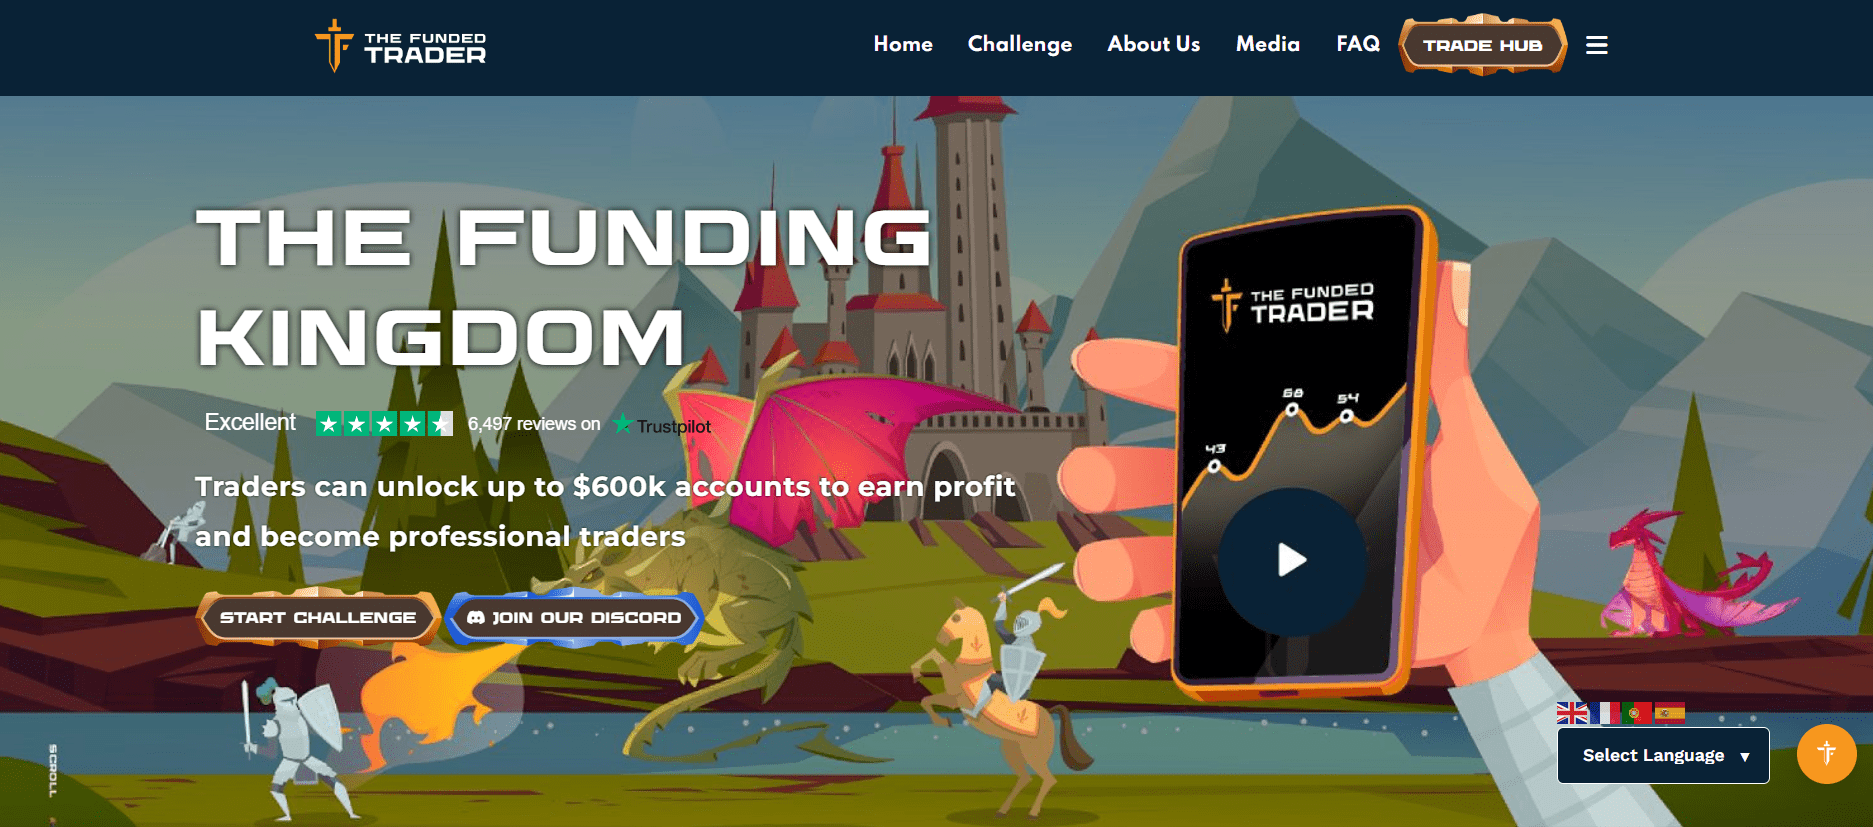 The Funded Trader Program Website